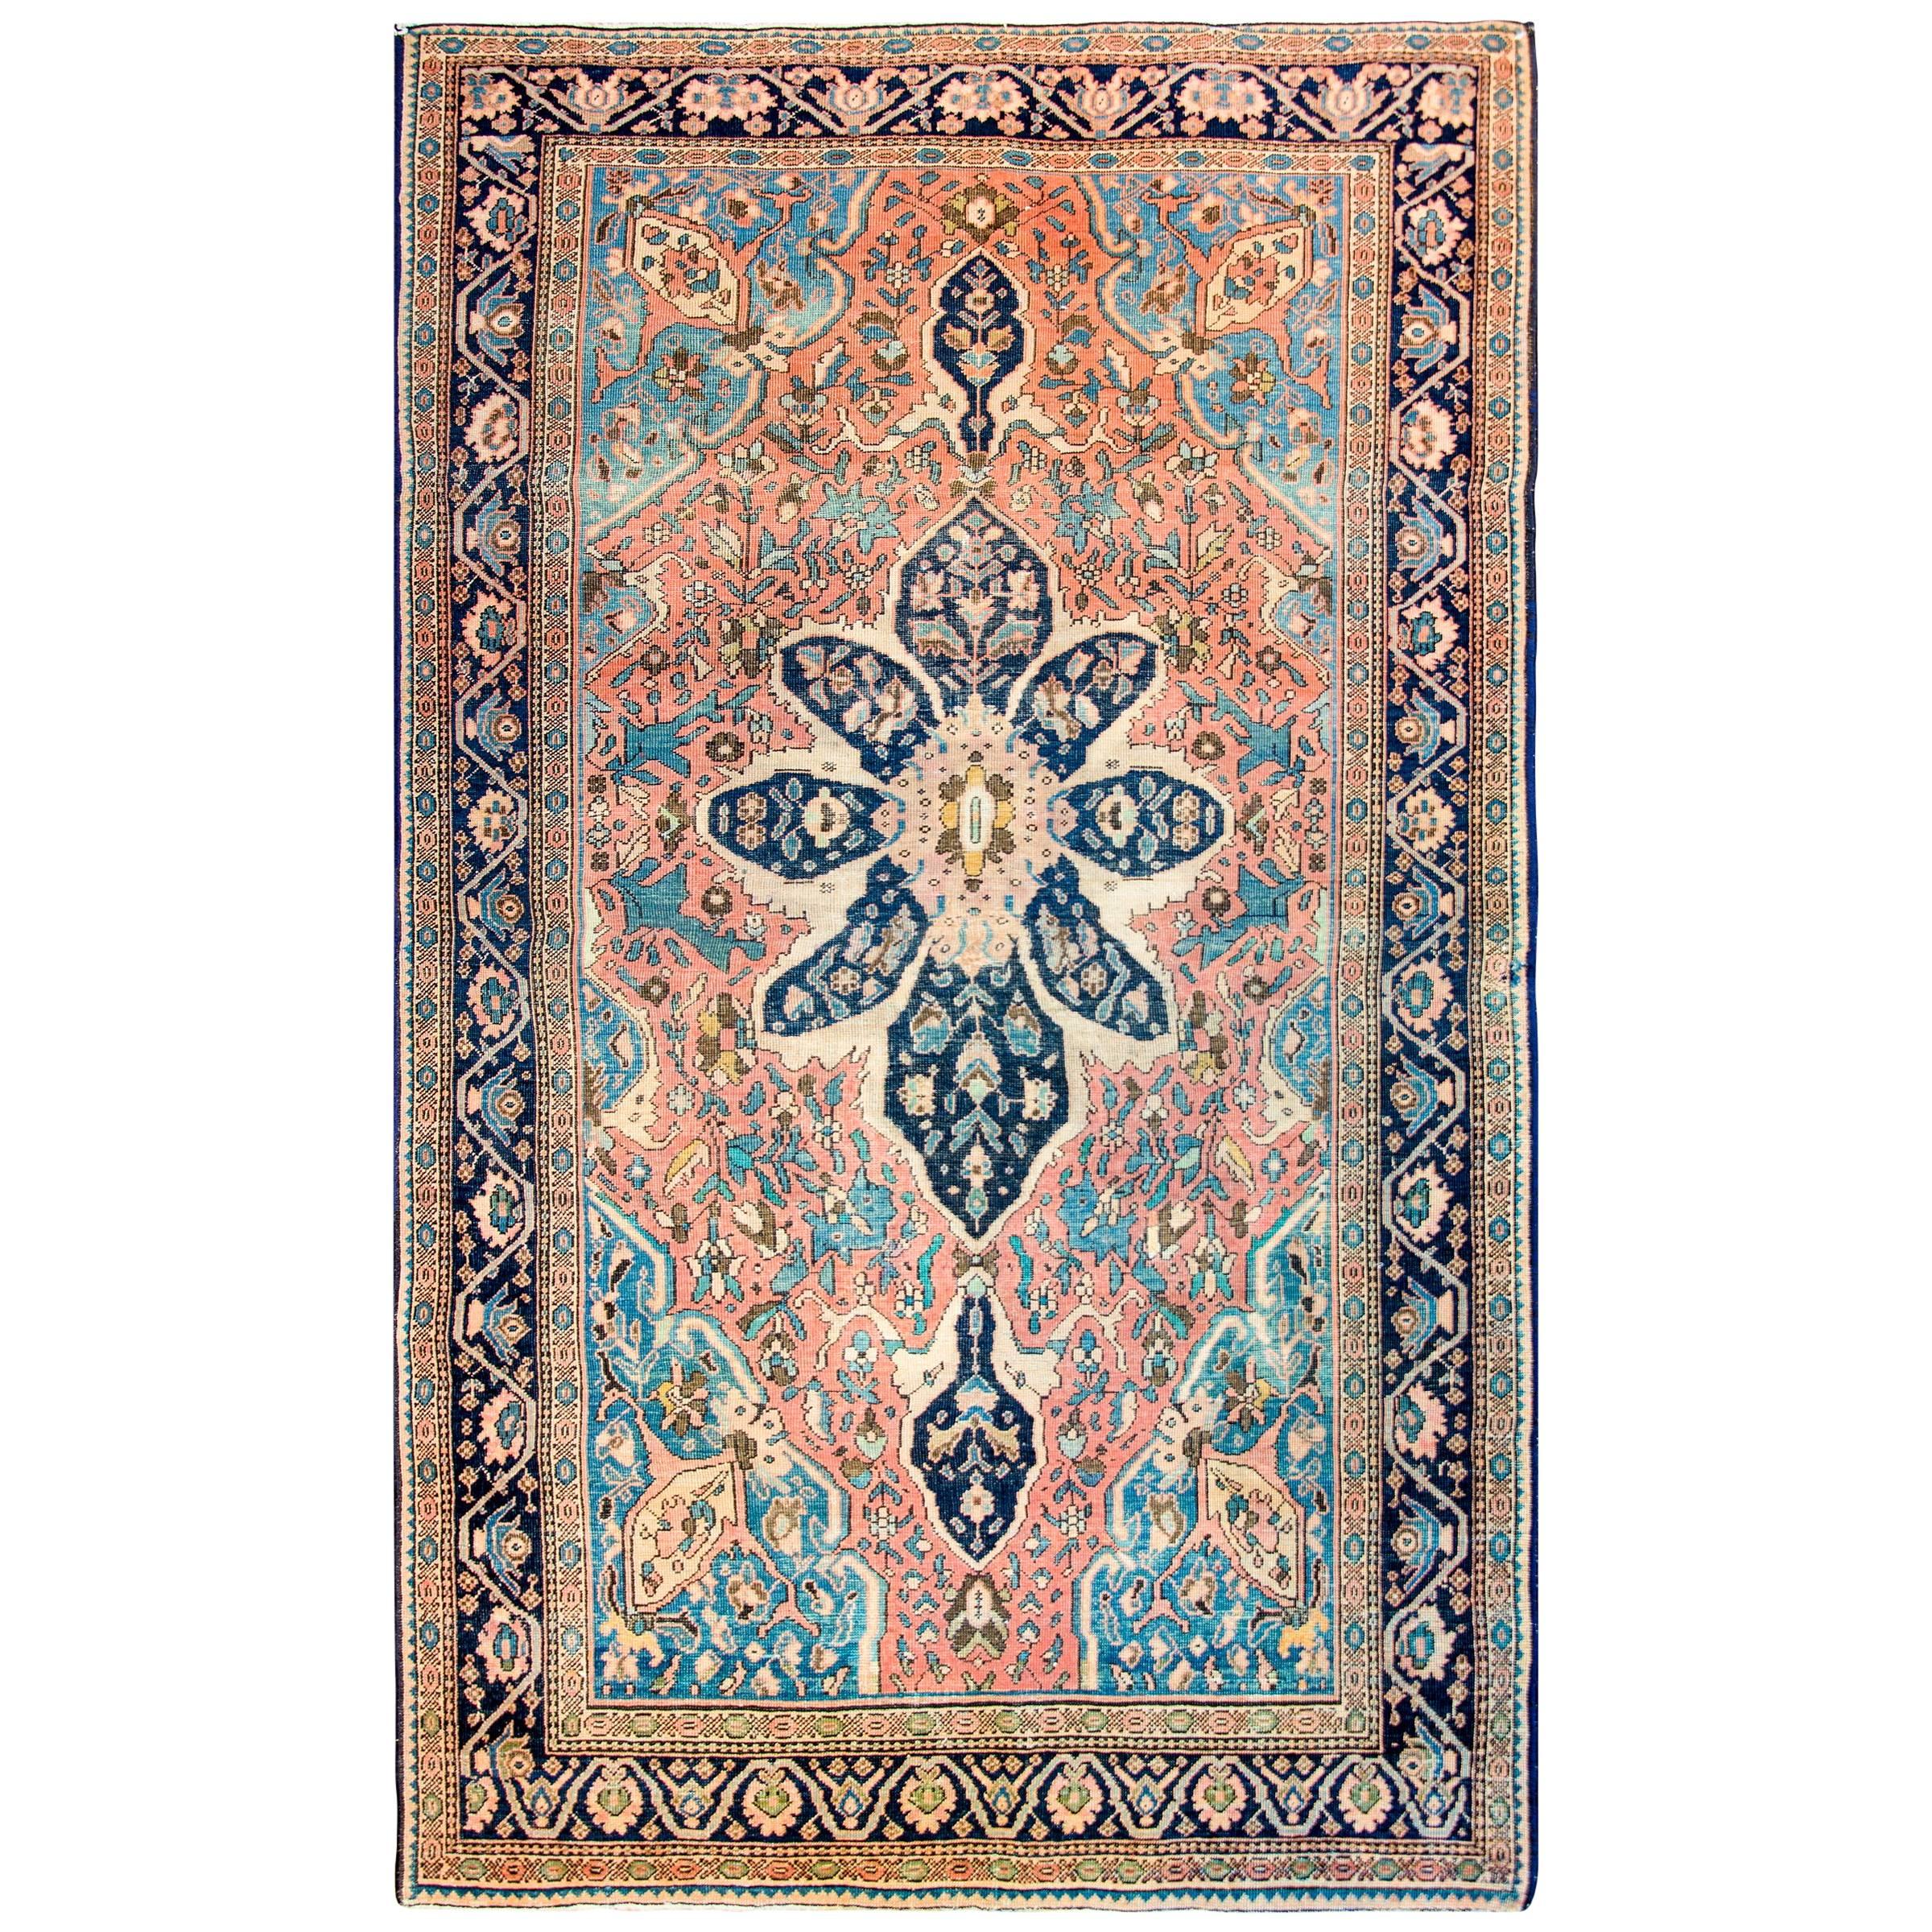 Exquisiter Sarouk Farahan-Teppich aus dem späten 19. Jahrhundert